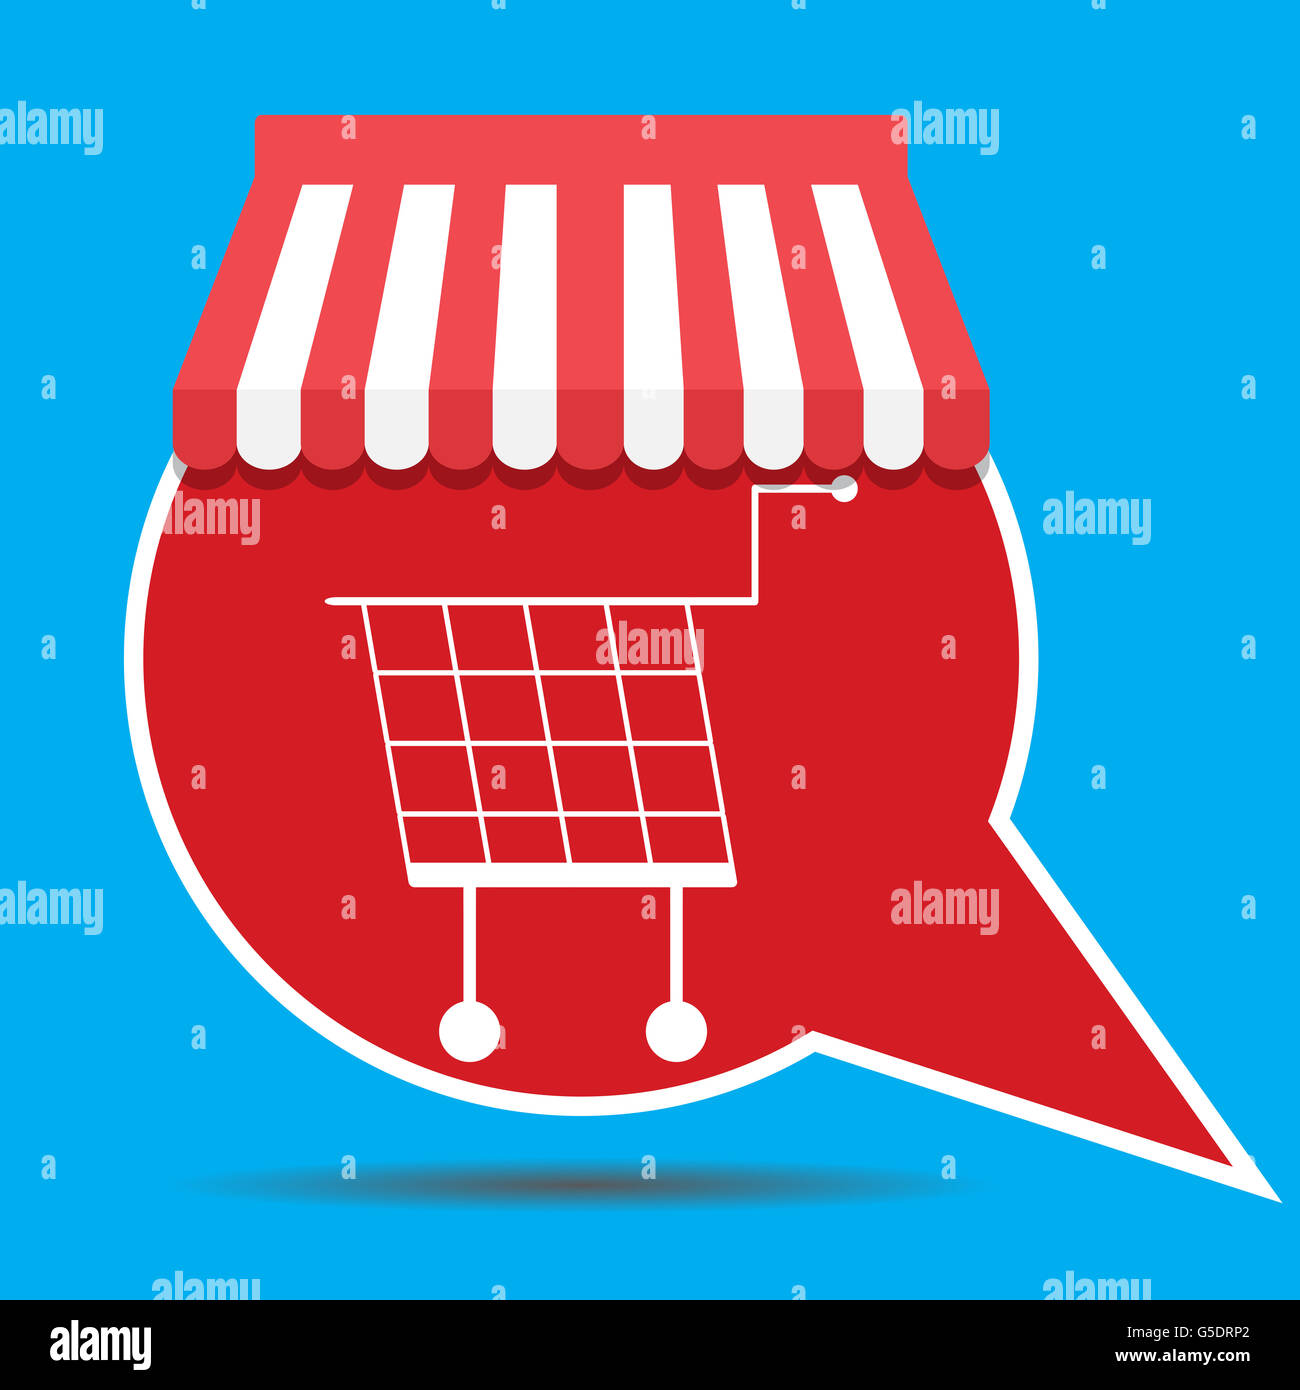 Etikett mit Warenkorb. Shopping Warenkorb-Icon und Einkaufskorb für Supermarkt, Vektor-illustration Stockfoto